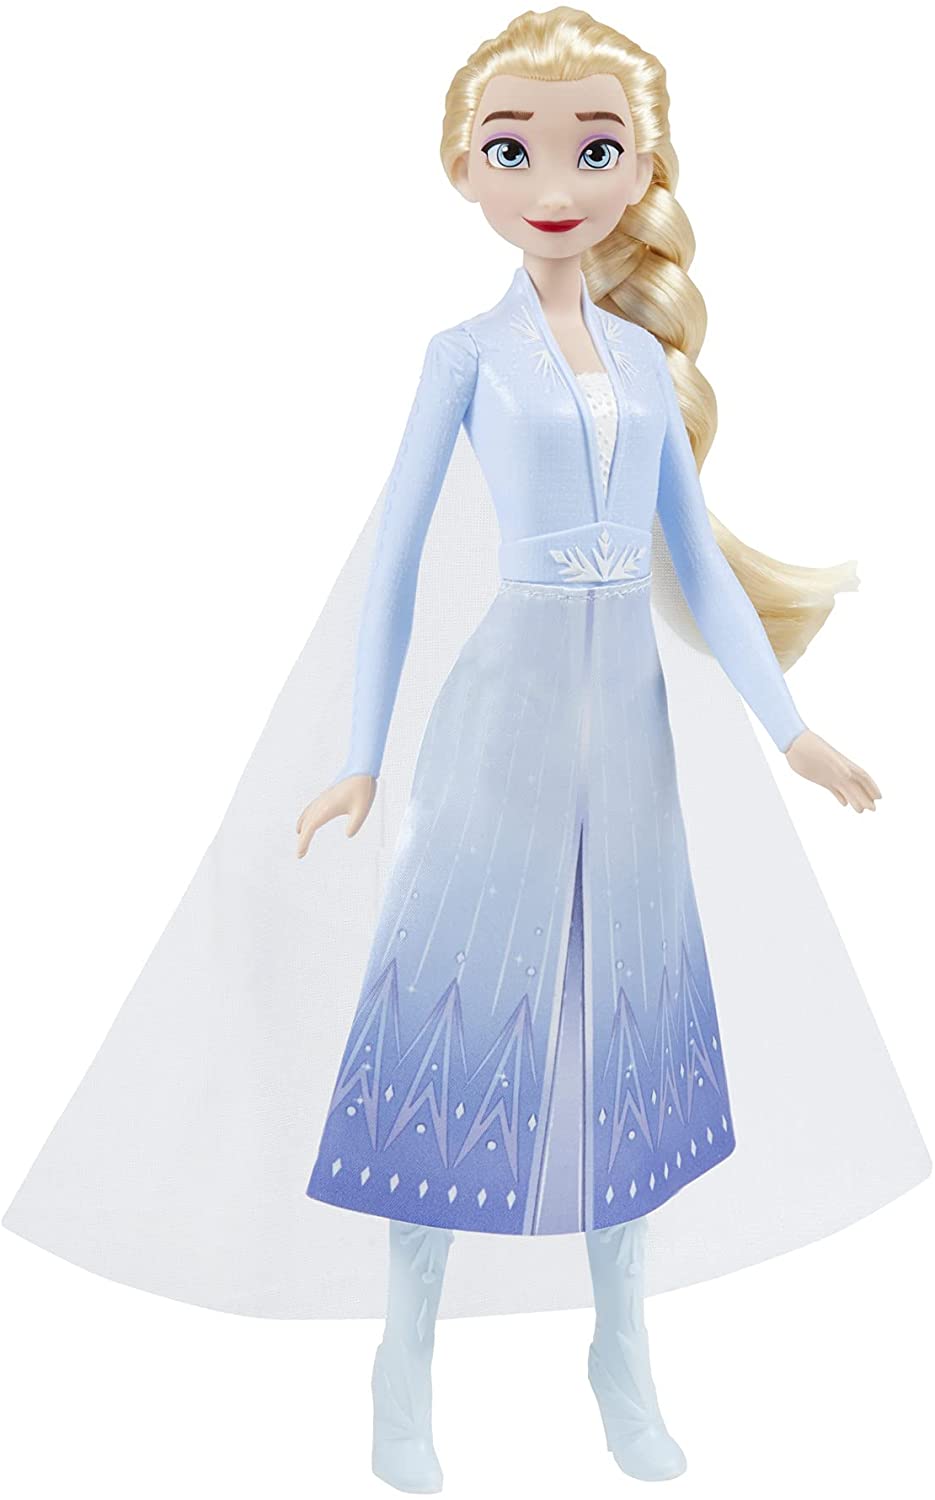 Disney F0796 2 Elsa Frozen Shimmer Poupée de mode, jupe, chaussures et longs cheveux blonds, jouet pour enfants de 3 ans et plus